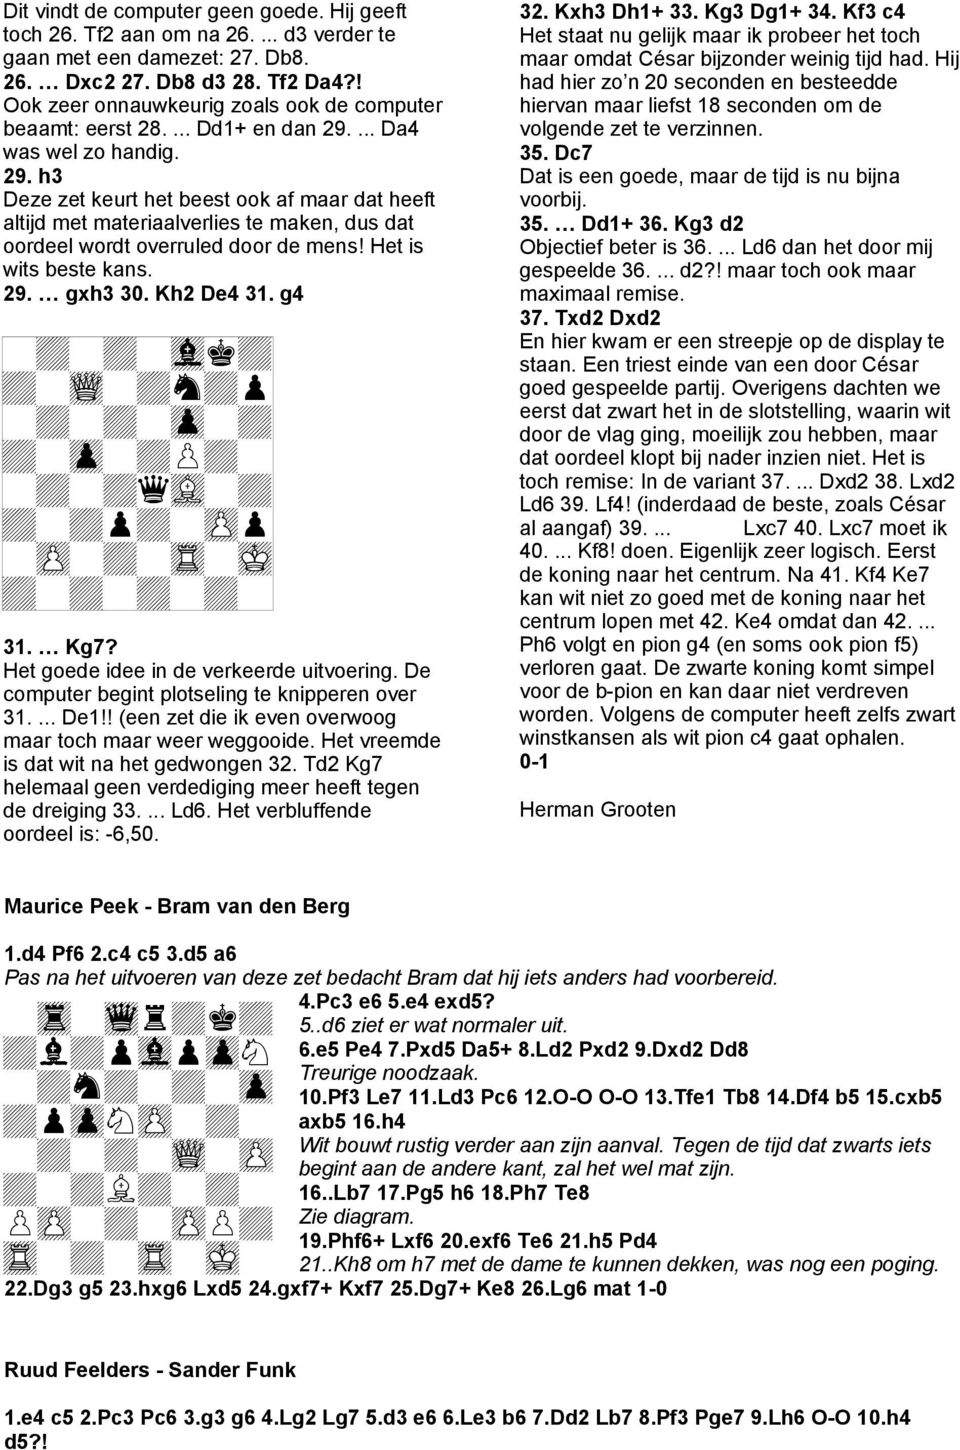 ... Da4 was wel zo handig. 29. h3 Deze zet keurt het beest ook af maar dat heeft altijd met materiaalverlies te maken, dus dat oordeel wordt overruled door de mens! Het is wits beste kans. 29. gxh3 30.